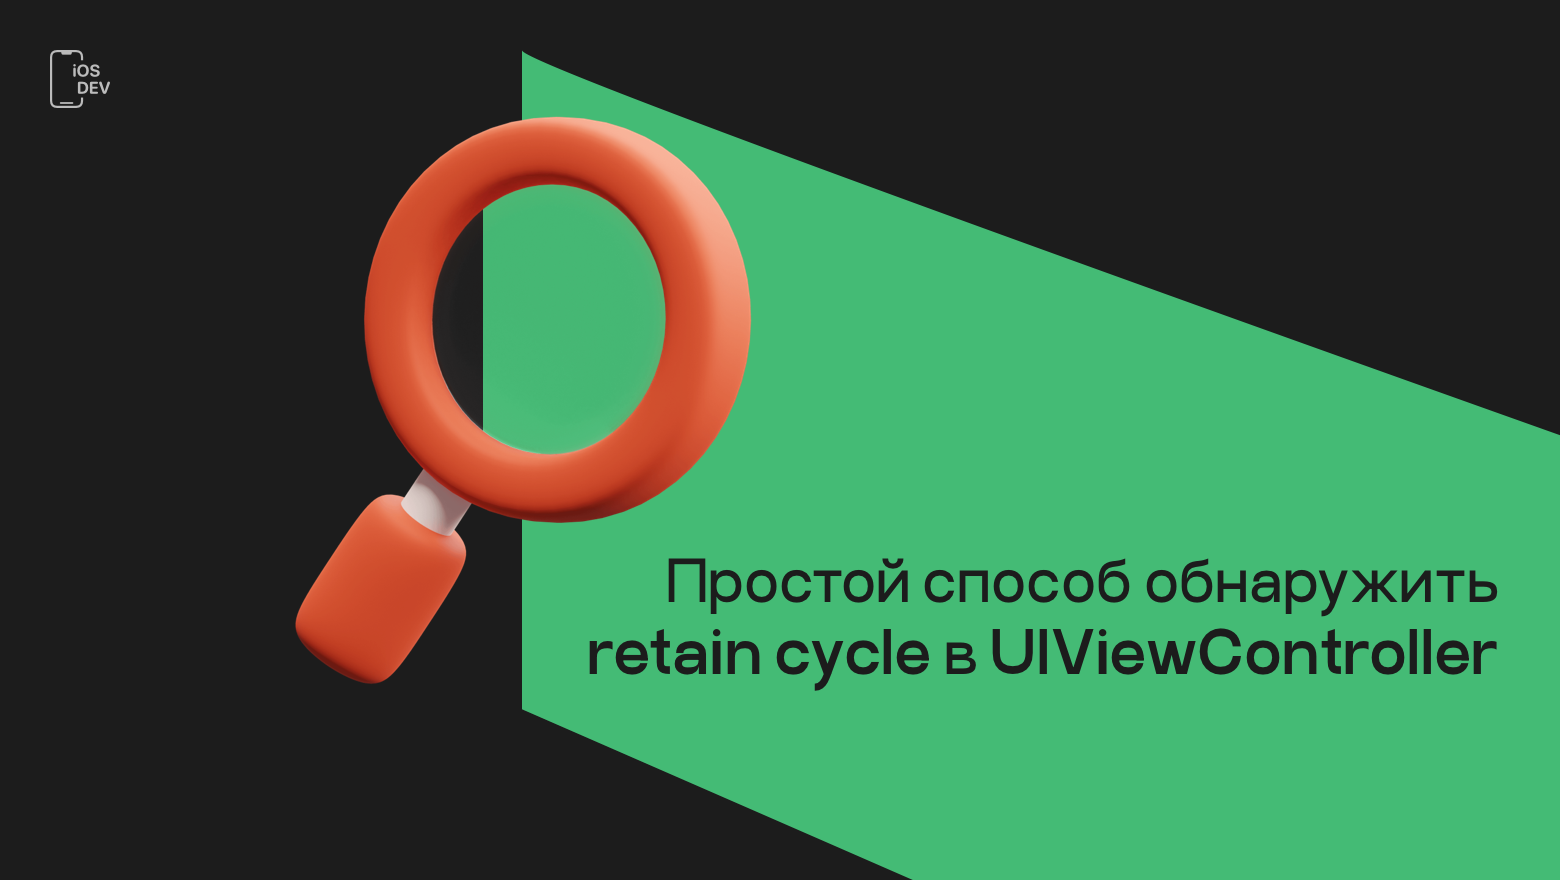 Простой способ обнаружить retain cycle в UIViewController